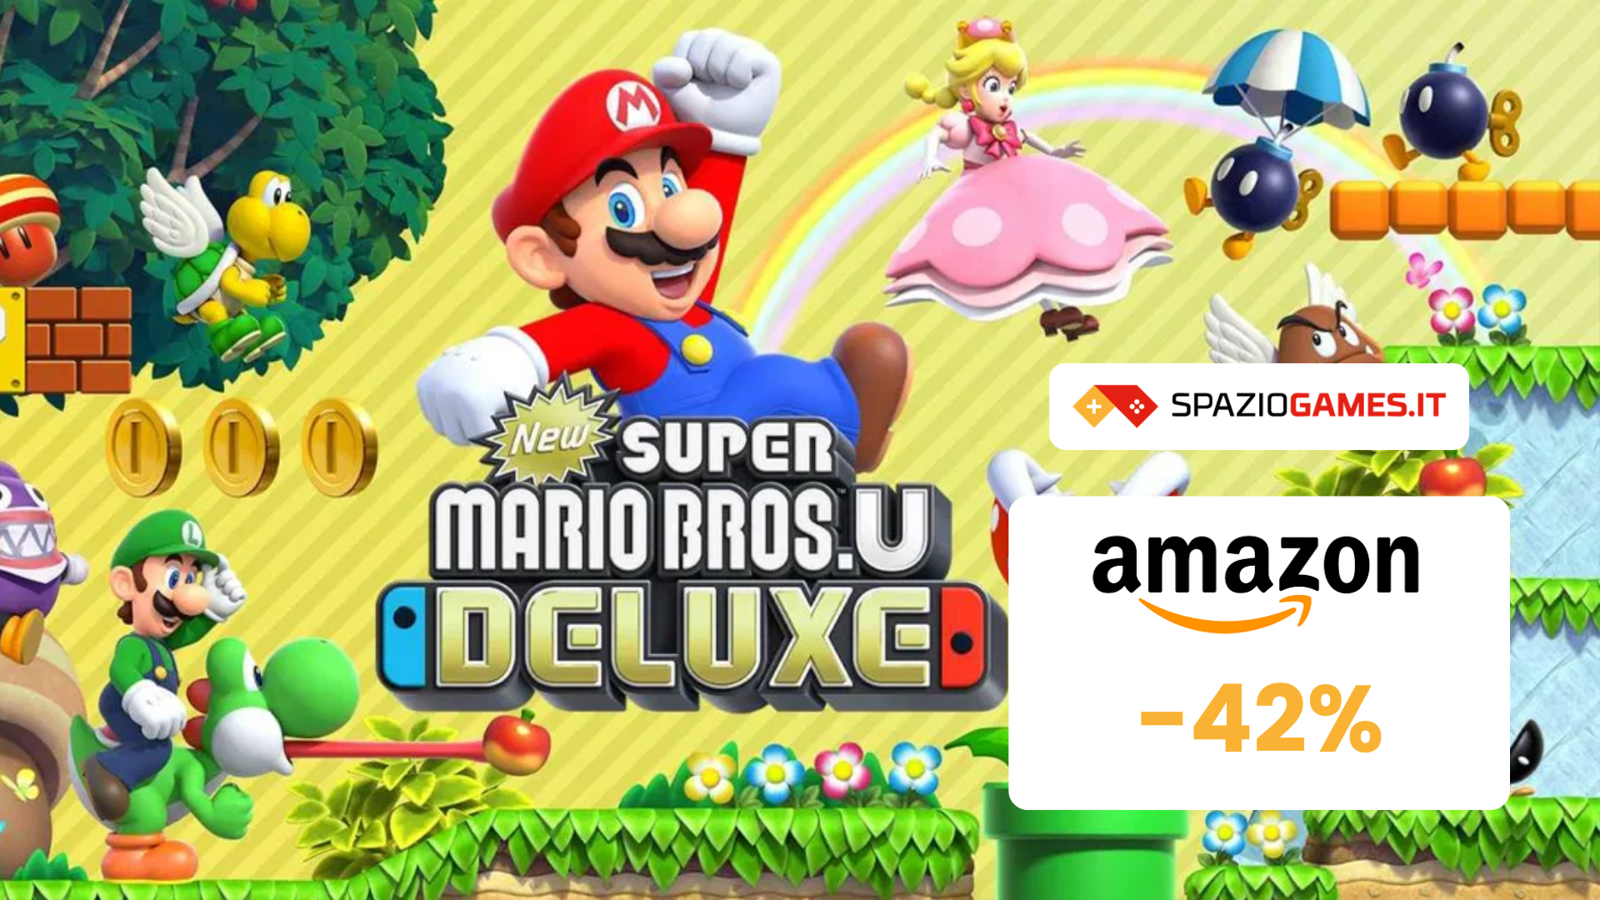 New Super Mario Bros. U Deluxe oggi è SCONTATO del 42%!